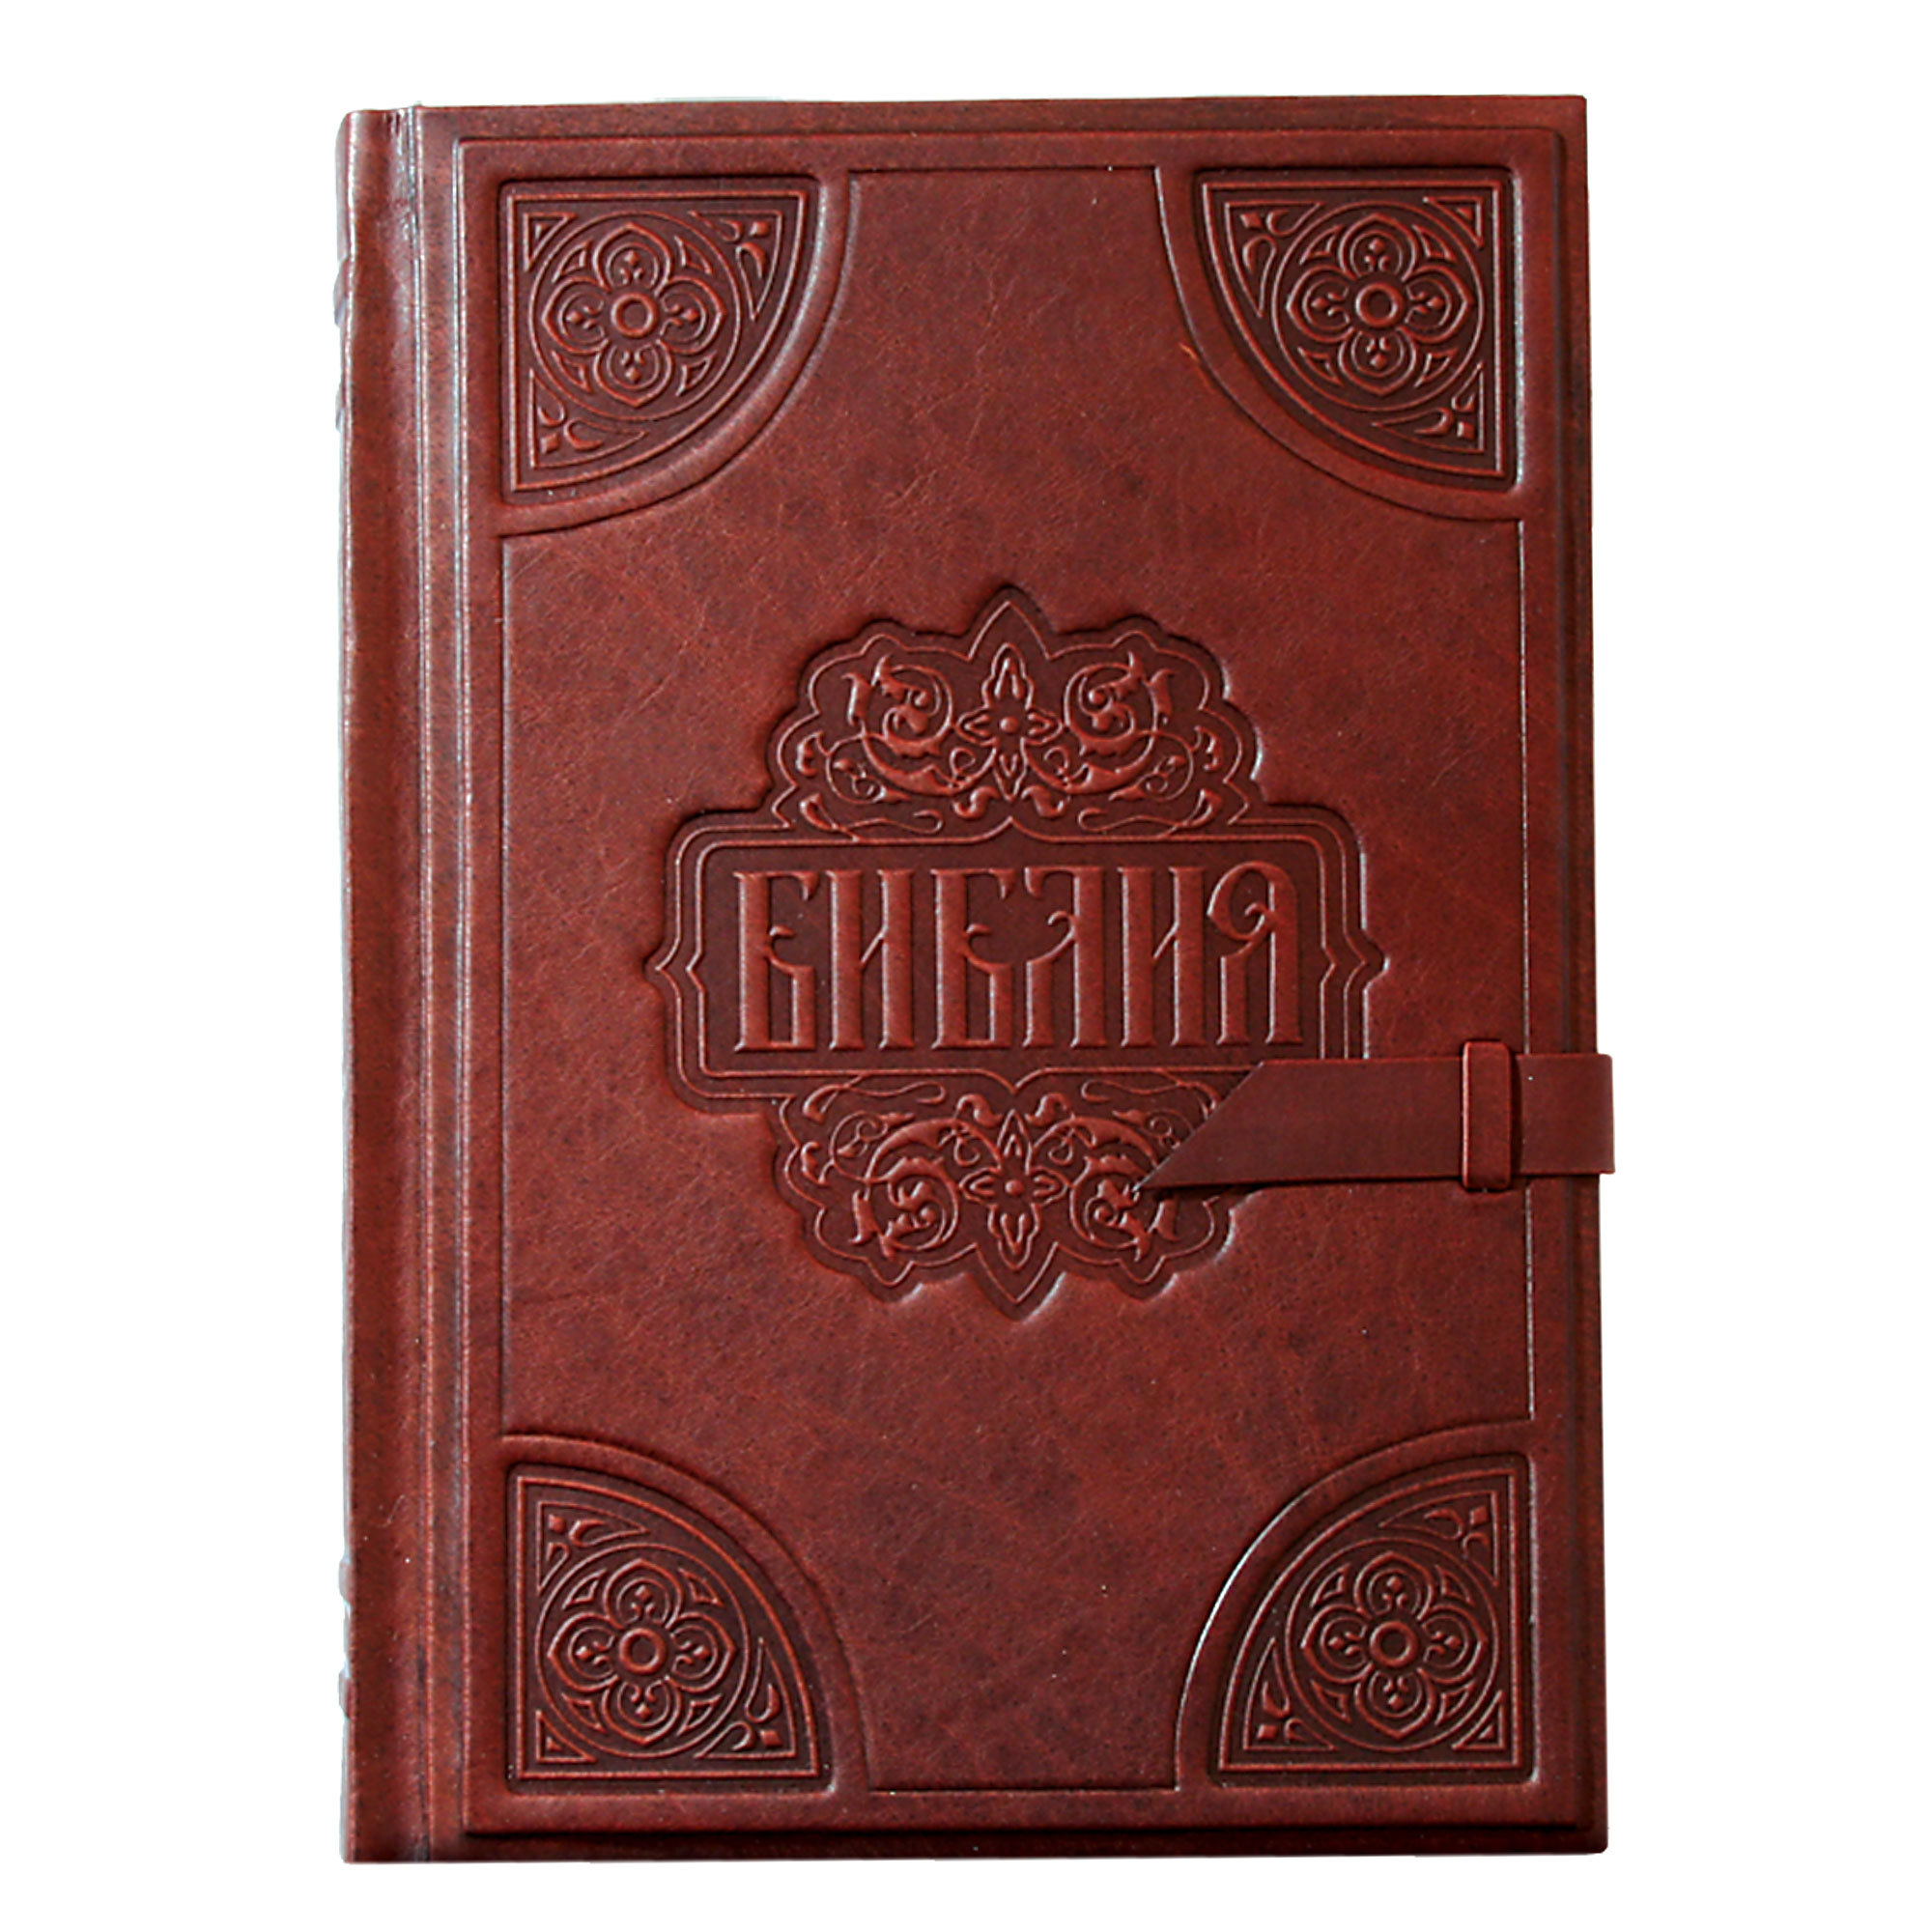 Картинка 002(з) Библия большая от интернет-магазина подарков "Макейс" в городе Москва